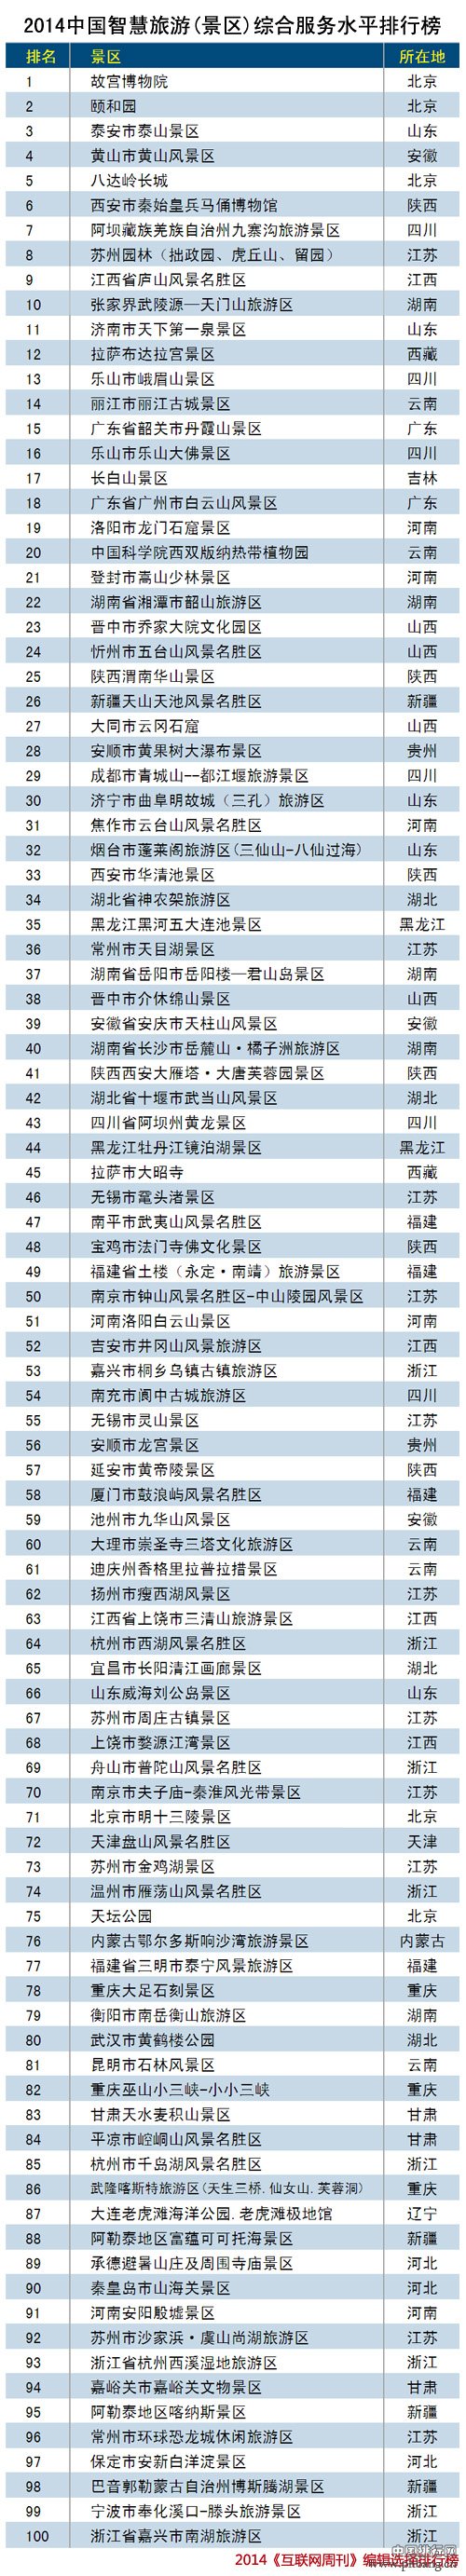 2014中国智慧旅游景区综合服务水平排行榜